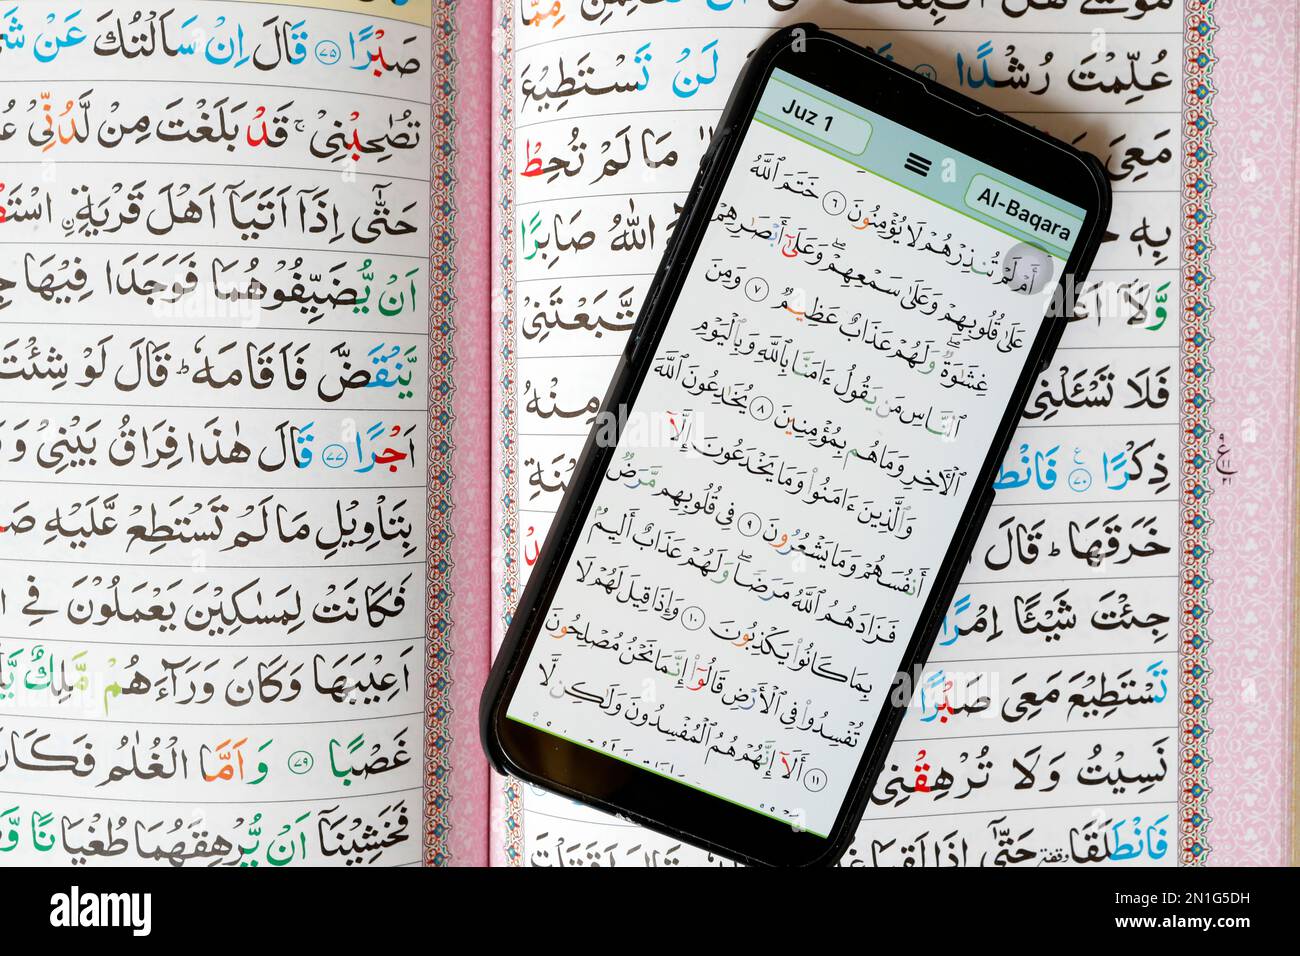 Coran numérique sur smartphone et papier traditionnel Saint Coran, papier et numérique Coran, mosquée Al-Serkal, Cambodge, Indochine, Asie du Sud-est, Asie Banque D'Images